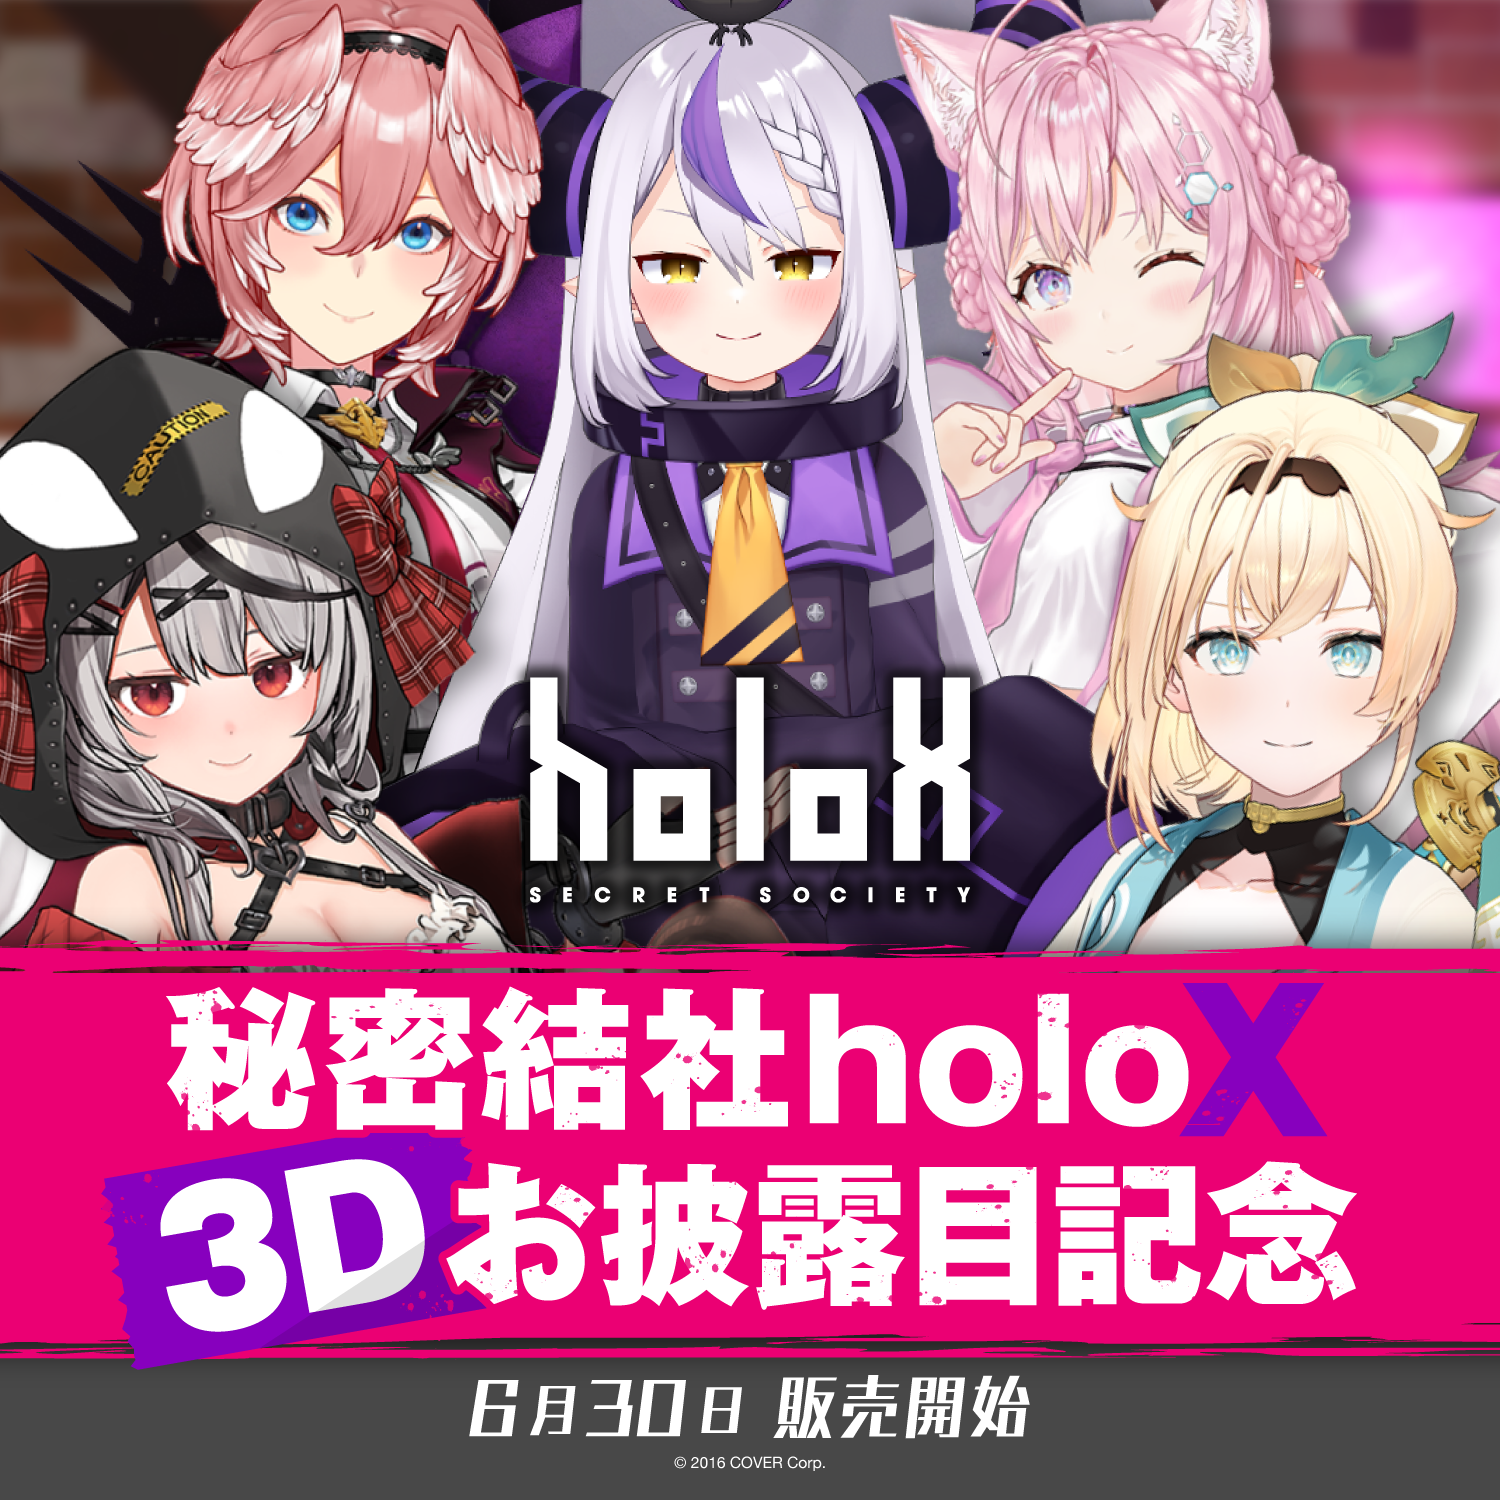 秘密結社holoX 3Dお披露目記念 – hololive production official shop